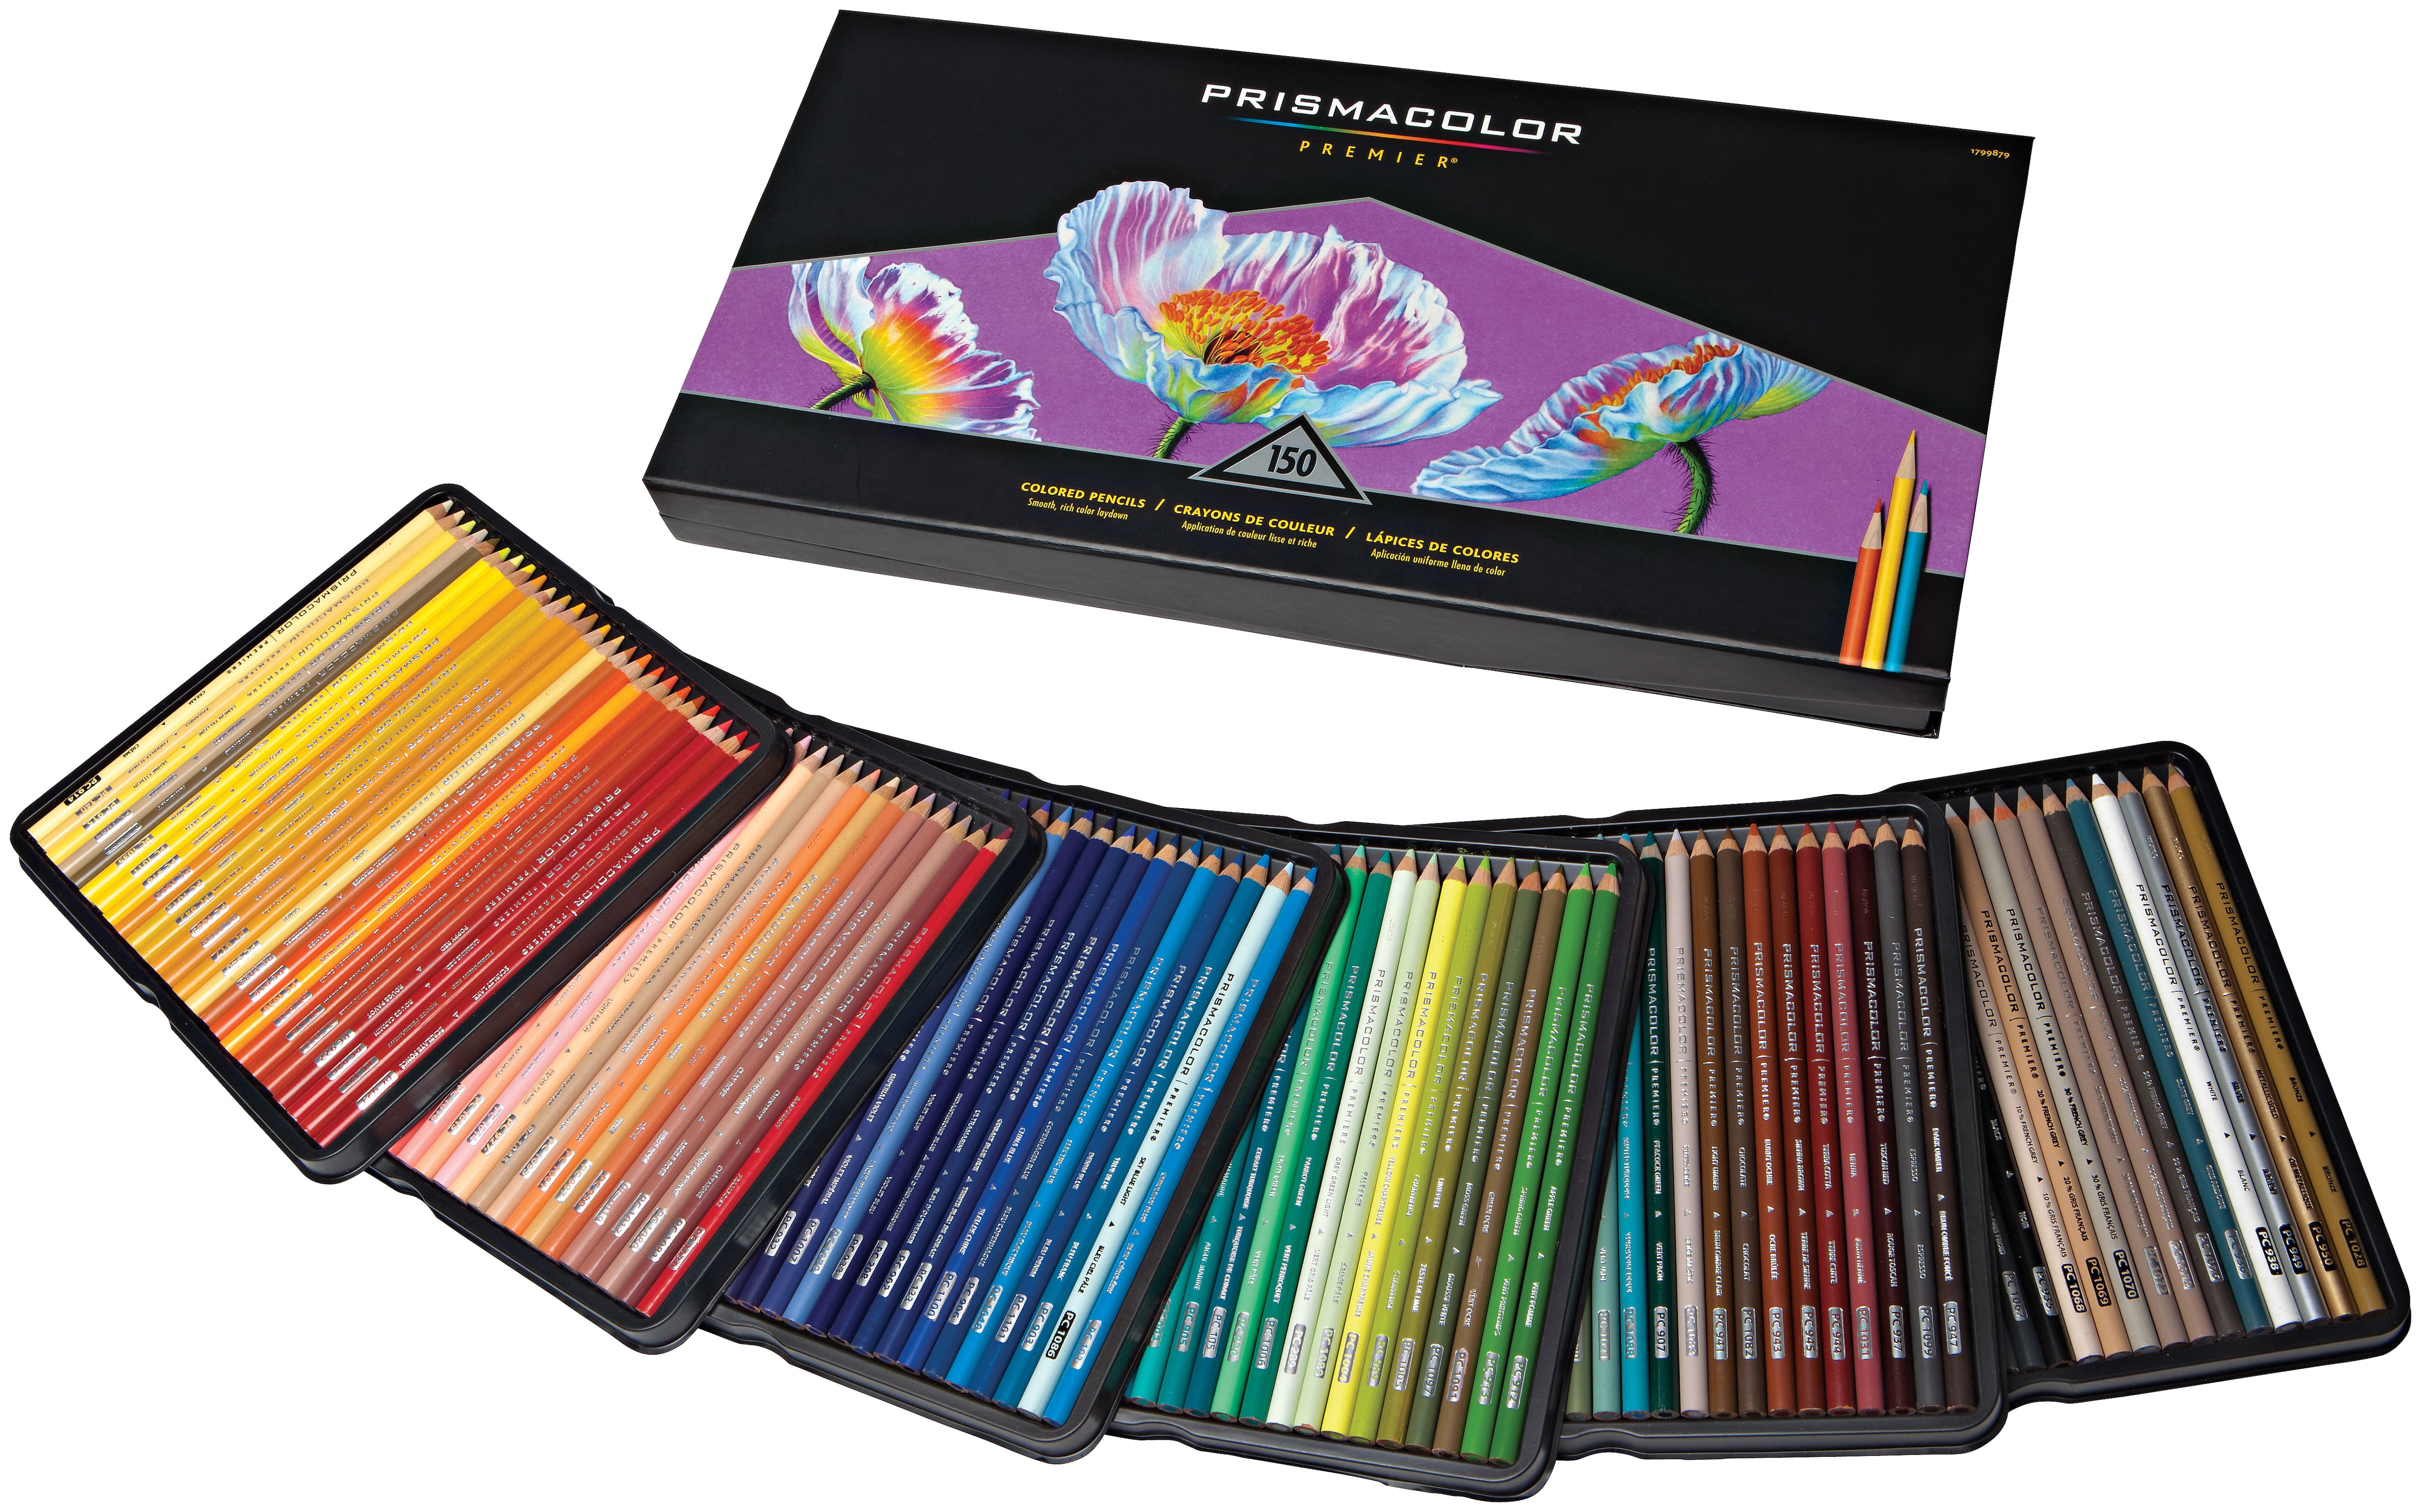 3 Packs: 150 ct. (450 total) Prismacolor® Premier® Soft Core